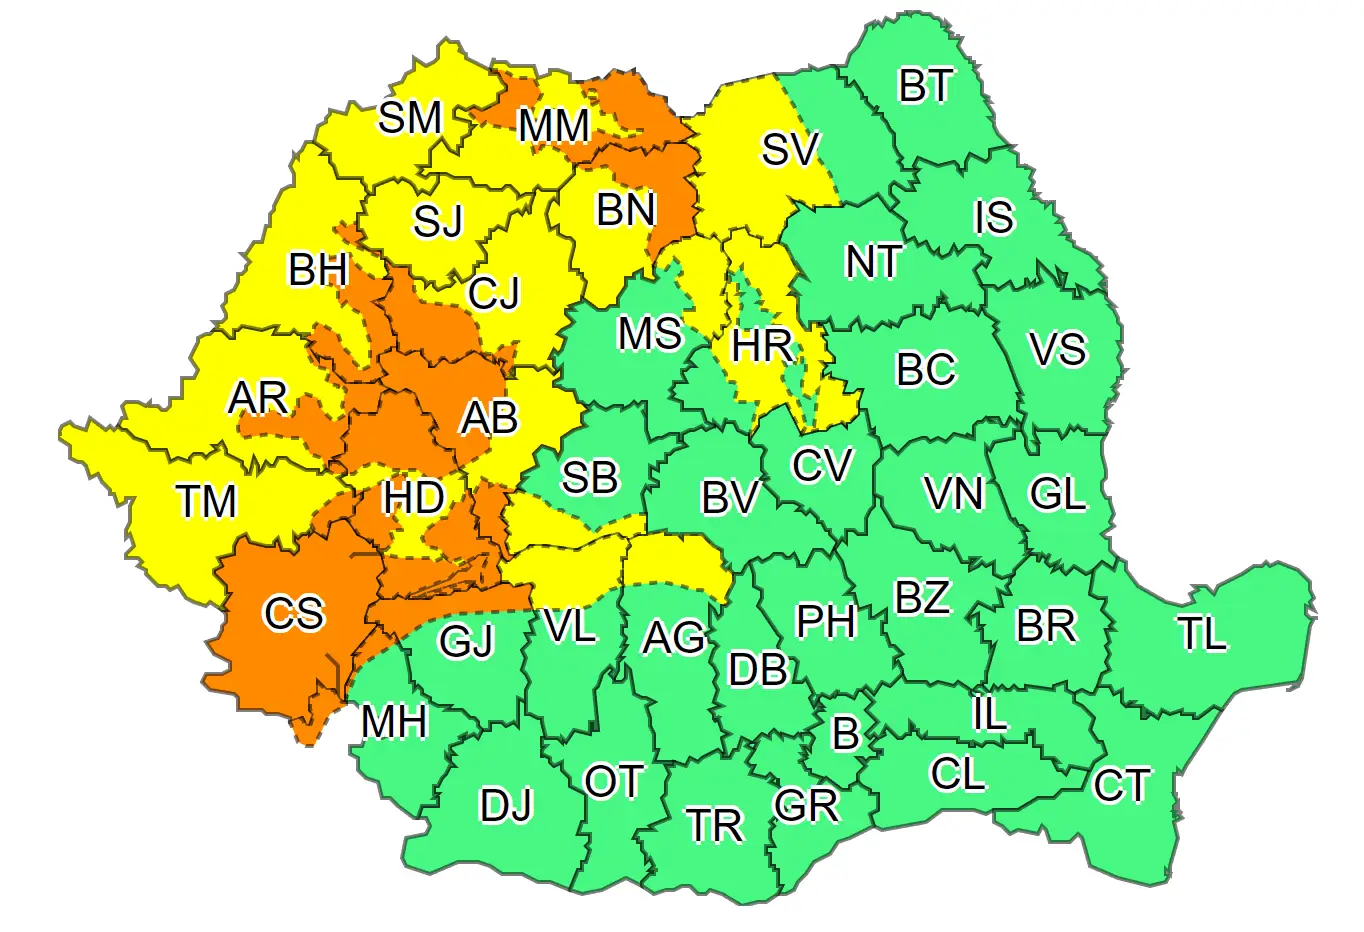 OSTATNI CZAS Alerty Meteorologiczne ANM Rumunia Cała mapa